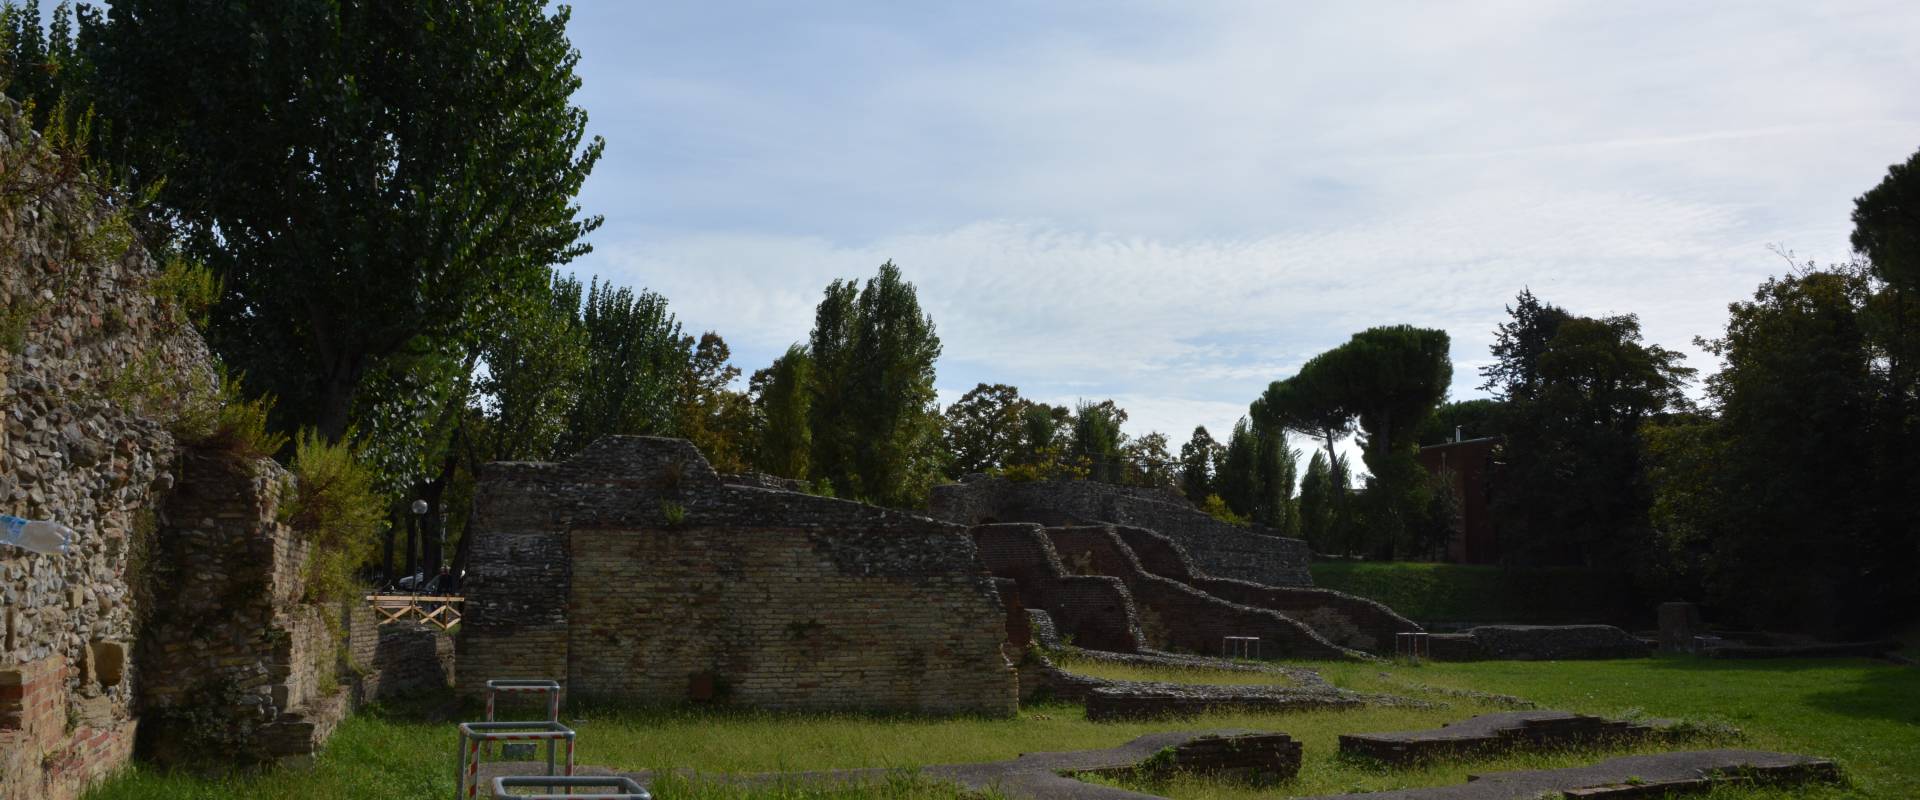 Anfiteatro romano DB-04 foto di Bacchi Rimini